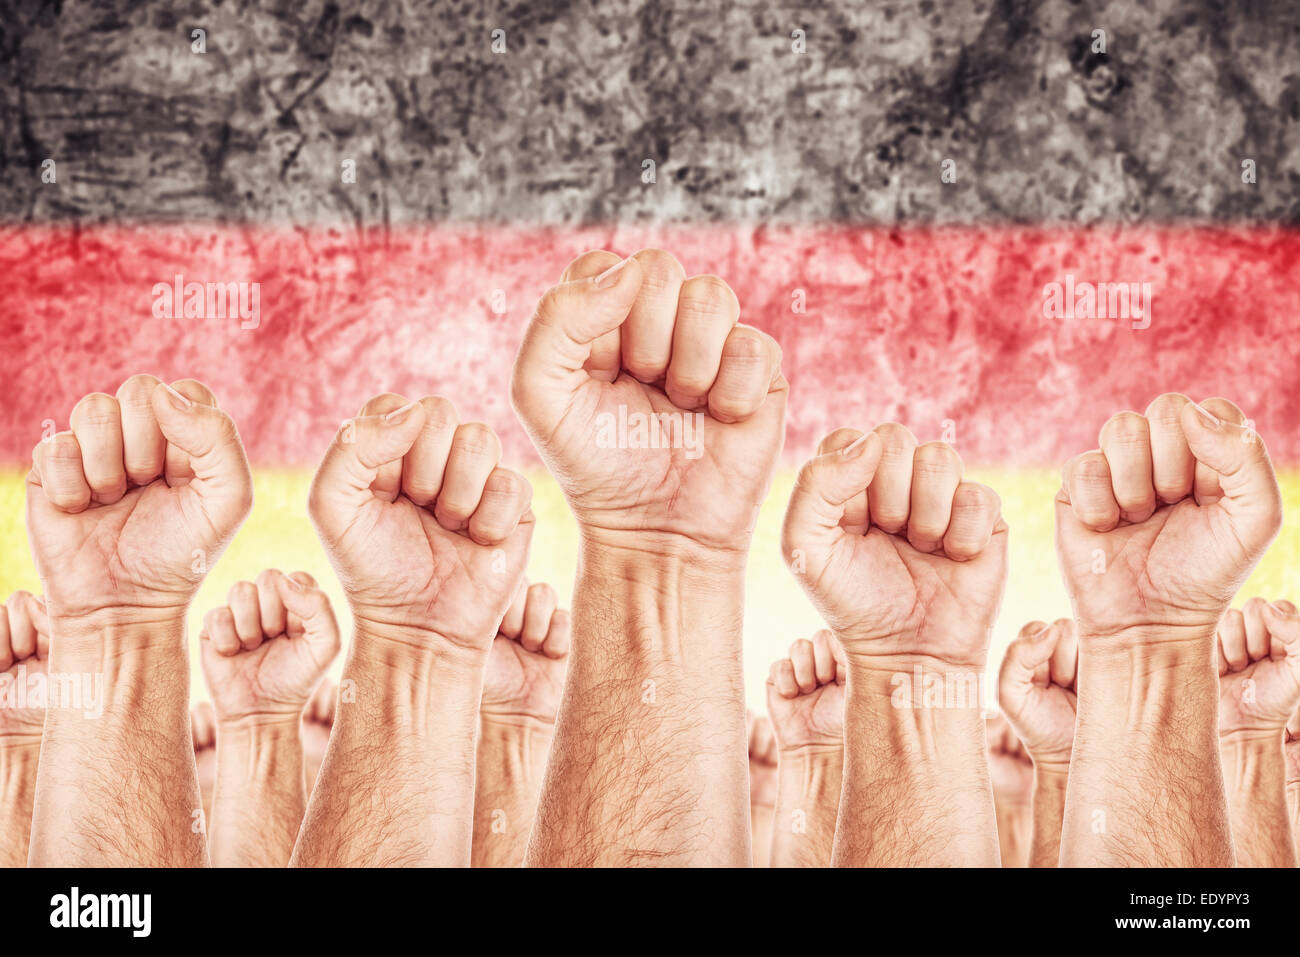 Germania movimento di lavoro lavoratori unione colpire nozione di sesso maschile con pugni sollevati in aria in lotta per i loro diritti Foto Stock